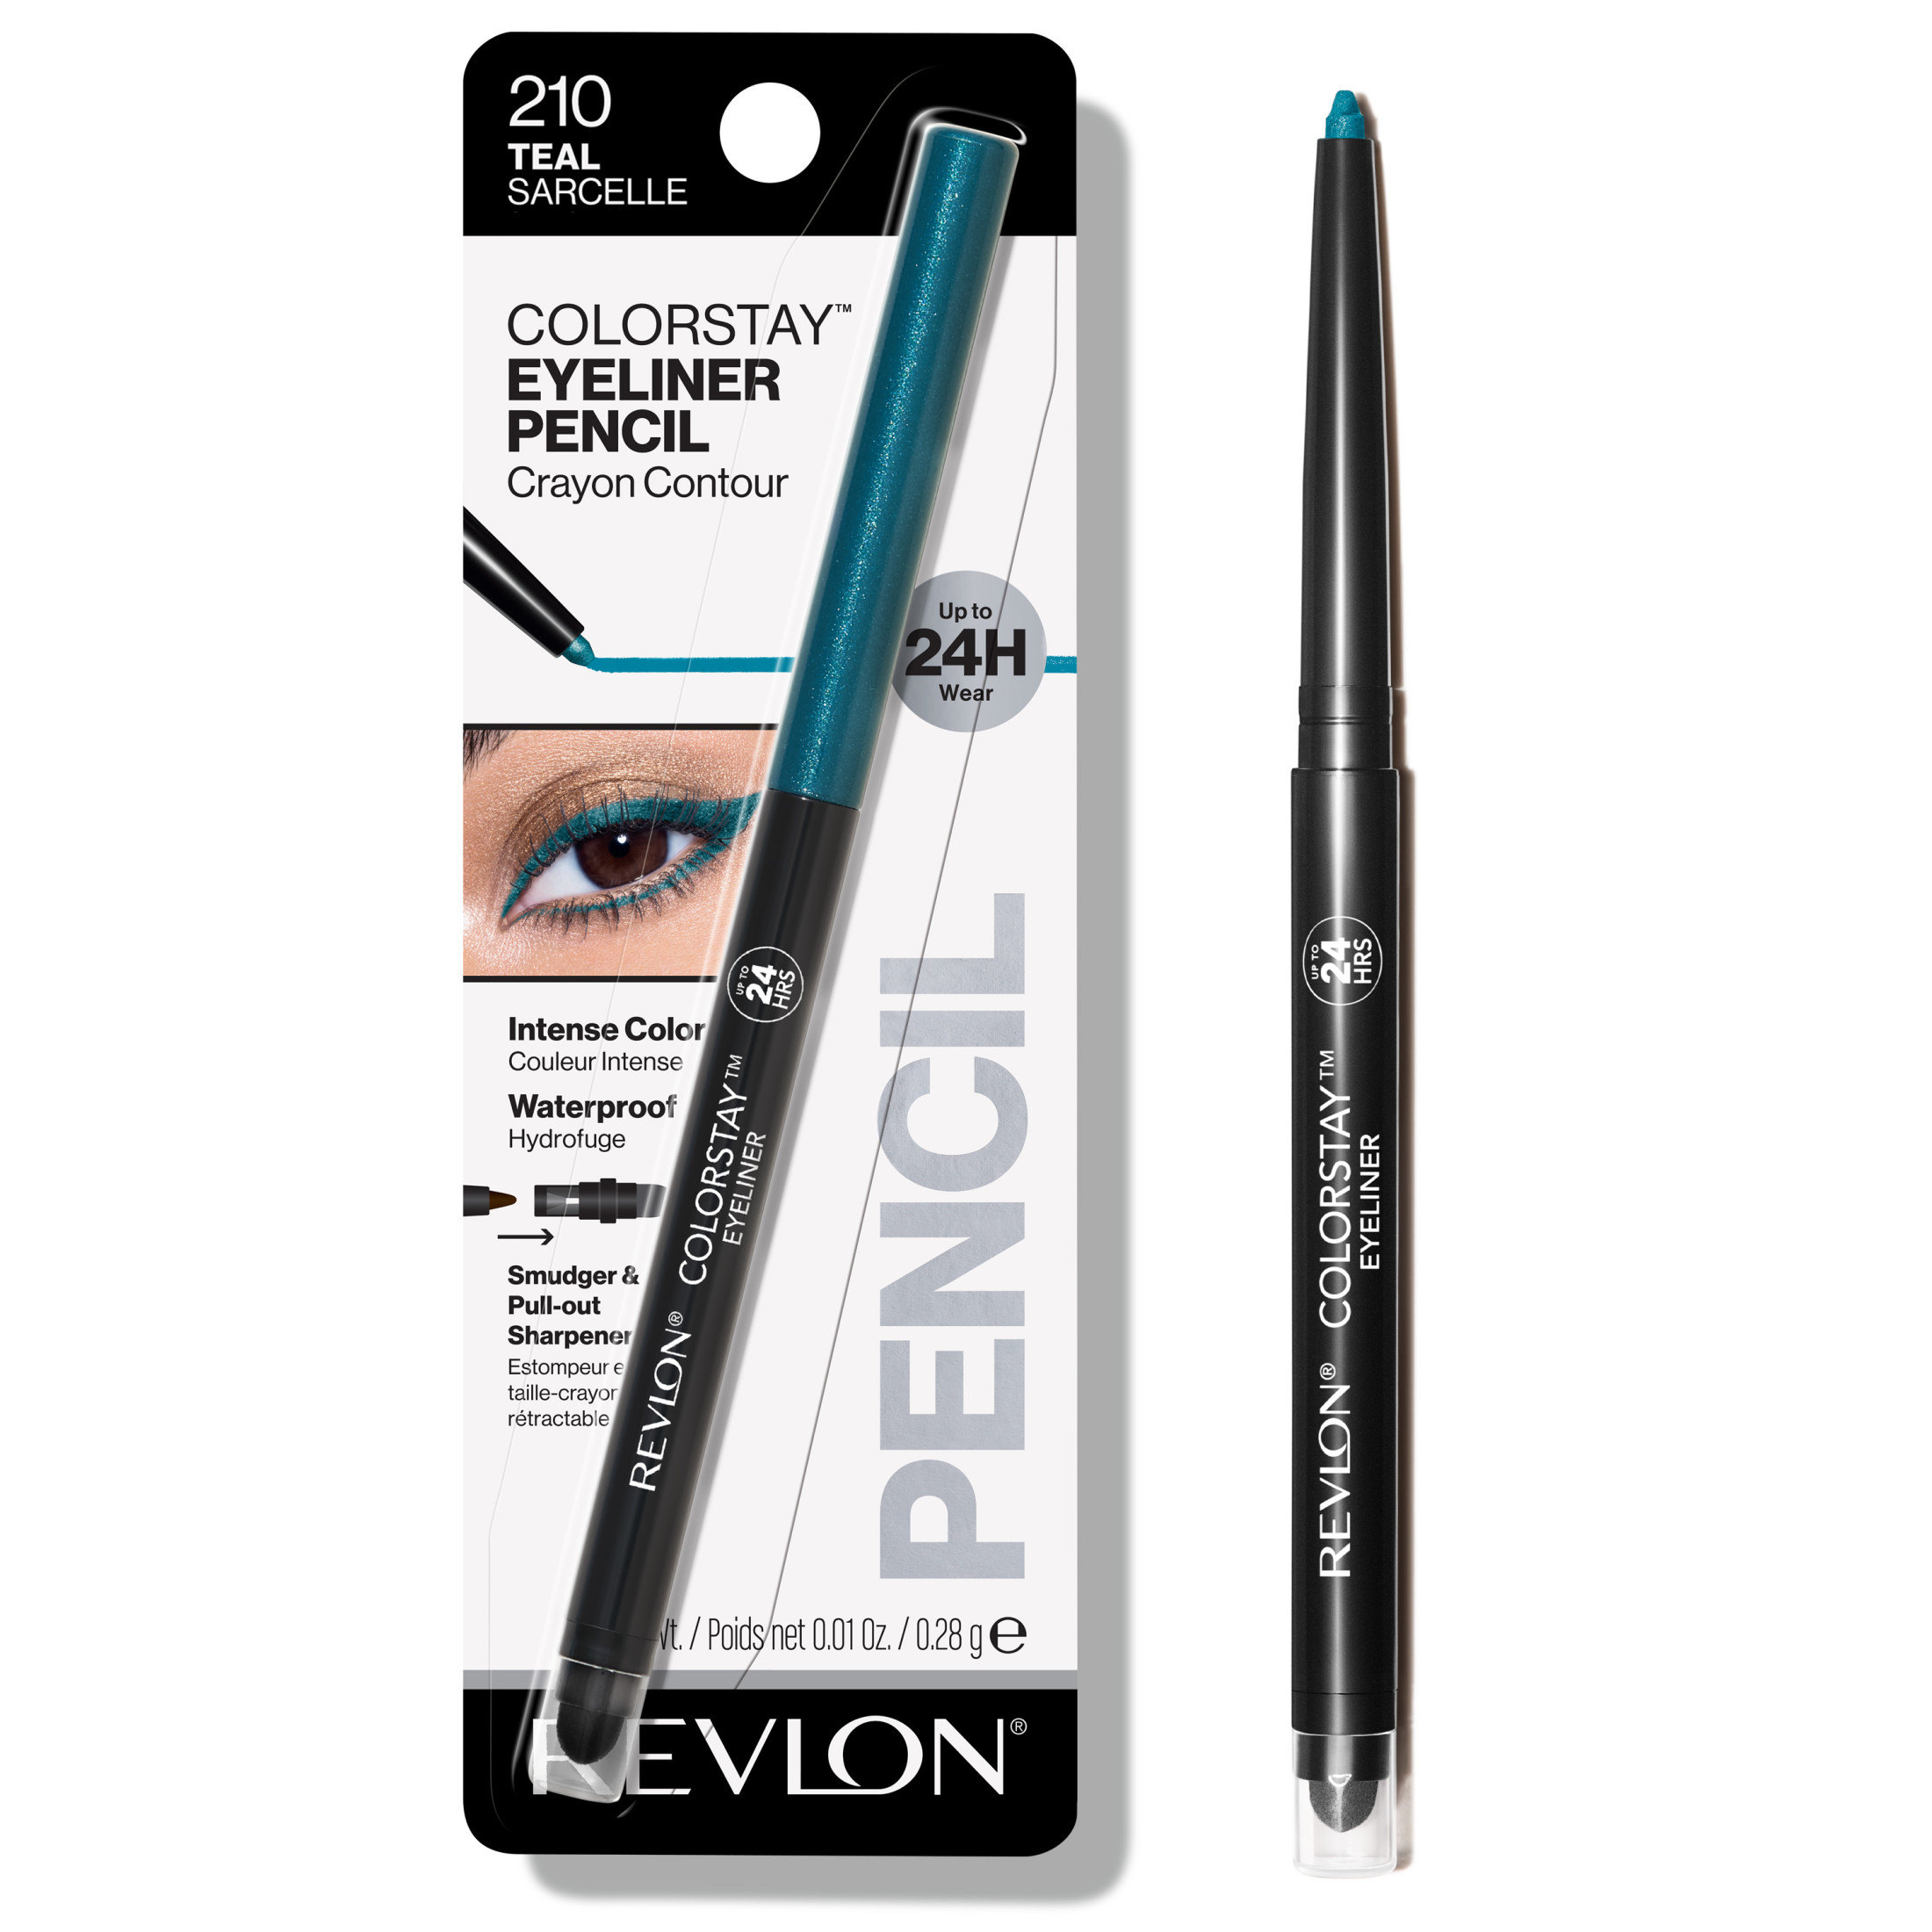 Revlon ColorStay Waterproof Eyeliner Pencil, 24HR Wear, Built-in Sharpener, 210 Teal, 0.01 oz - image 1 of 9